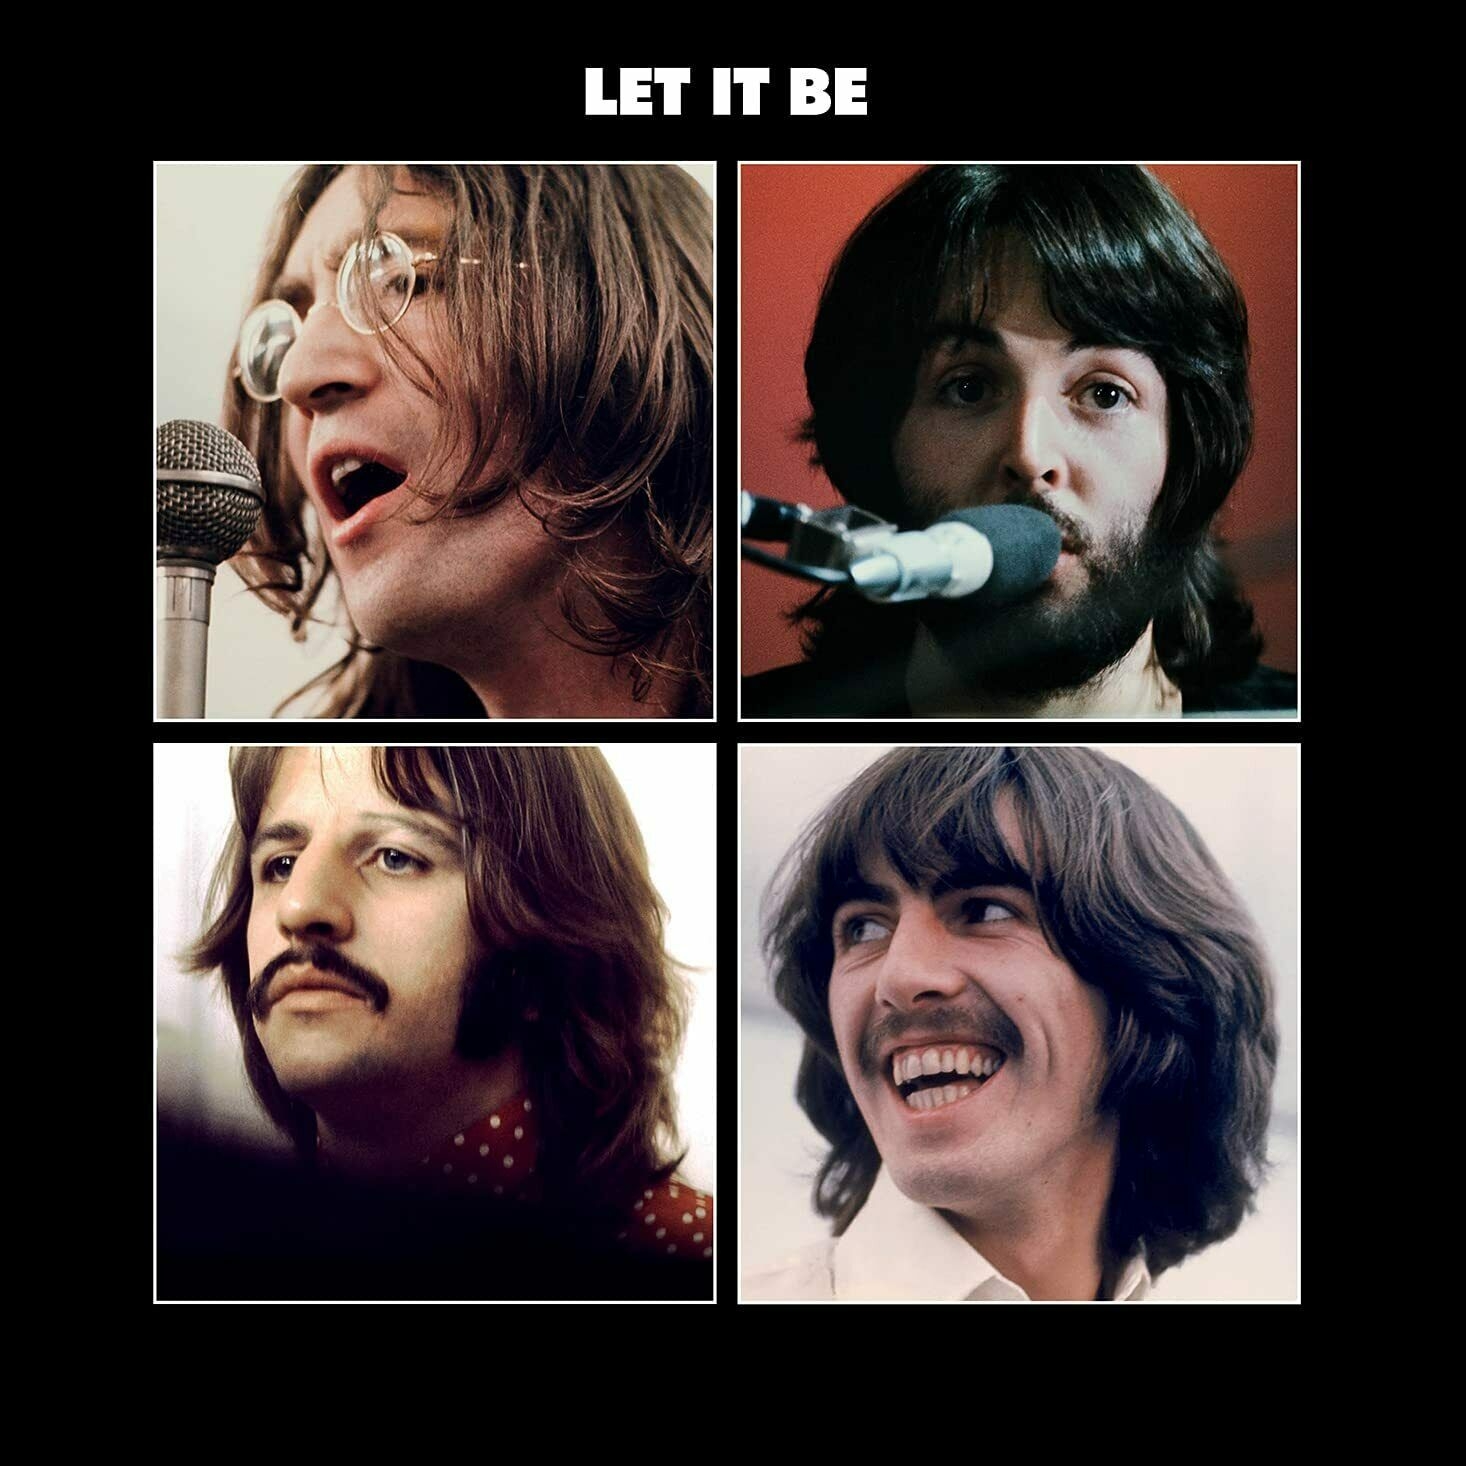 Виниловая Пластинка The Beatles Let It Be (0602507138653) пластиковое кольцо с листьями 30 отверстий пружинные спиральные кольца для бумаги a4 a5 a6 легко управляются вручную